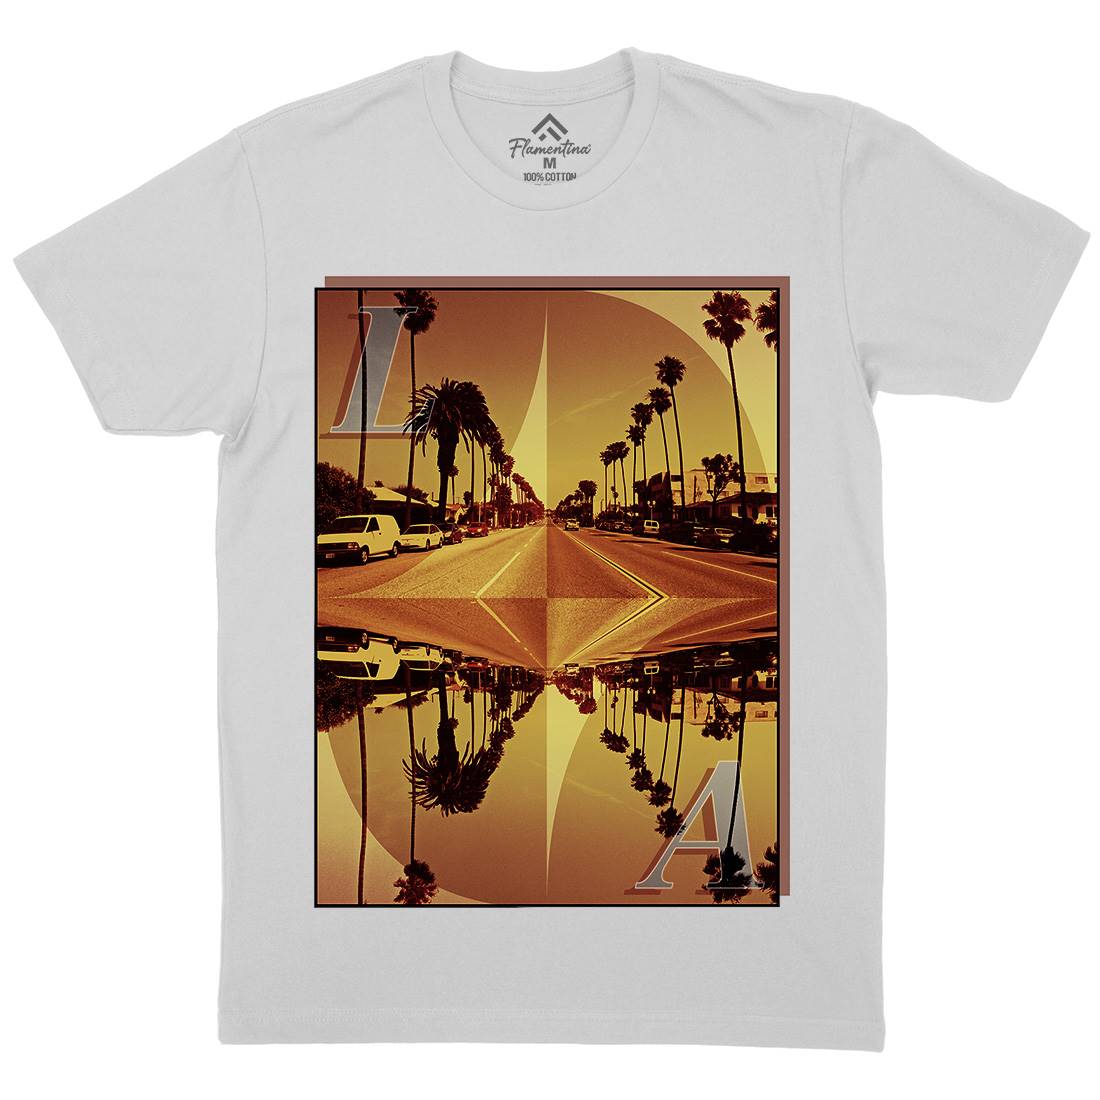 La Summer Mens Crew Neck T-Shirt Art A858